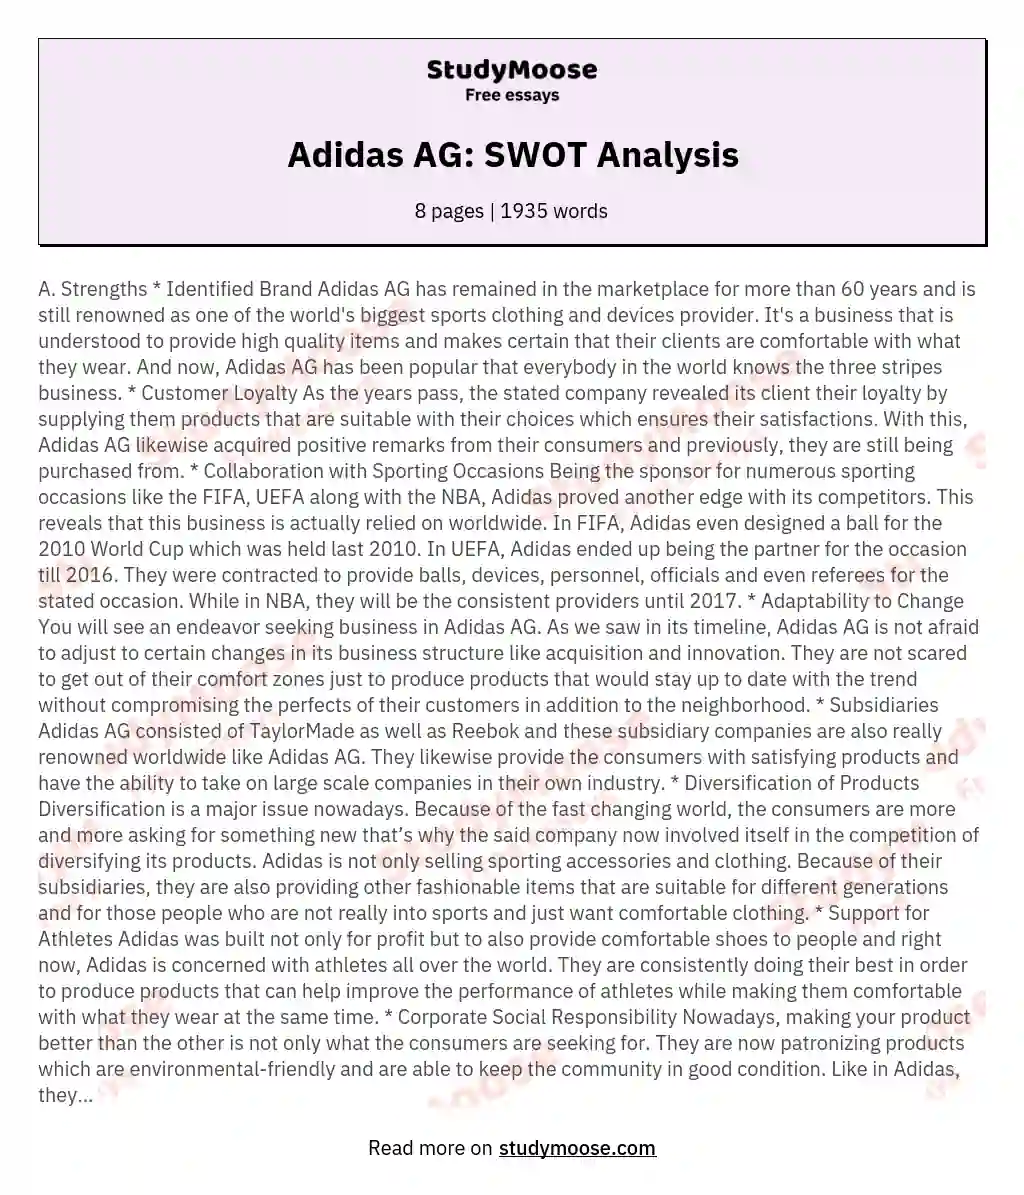 Adidas AG: SWOT Analysis